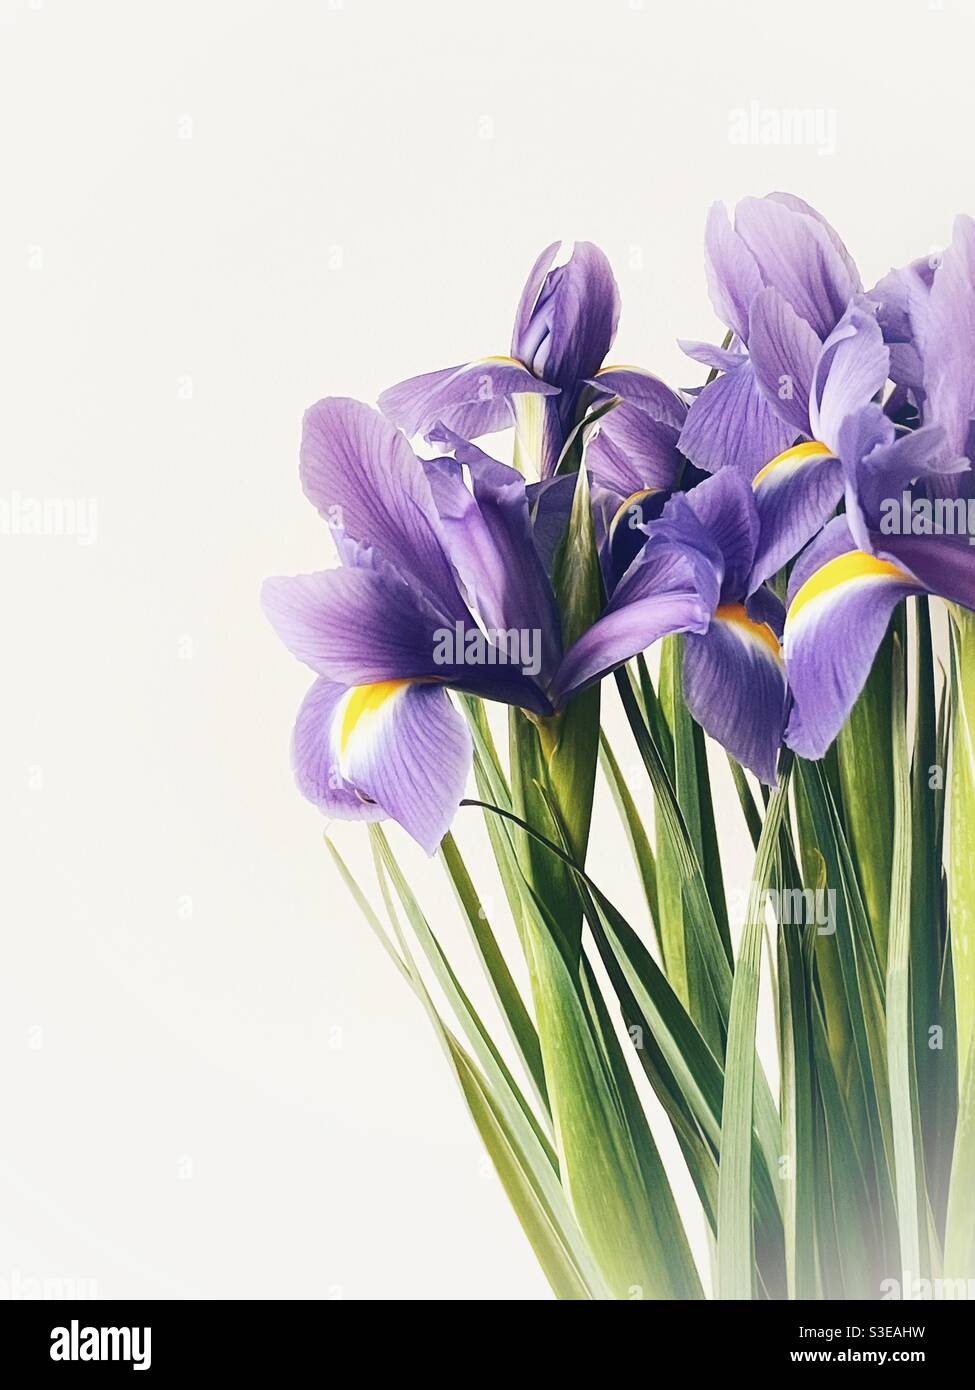 High key image of irises against a plain background. Stock Photo